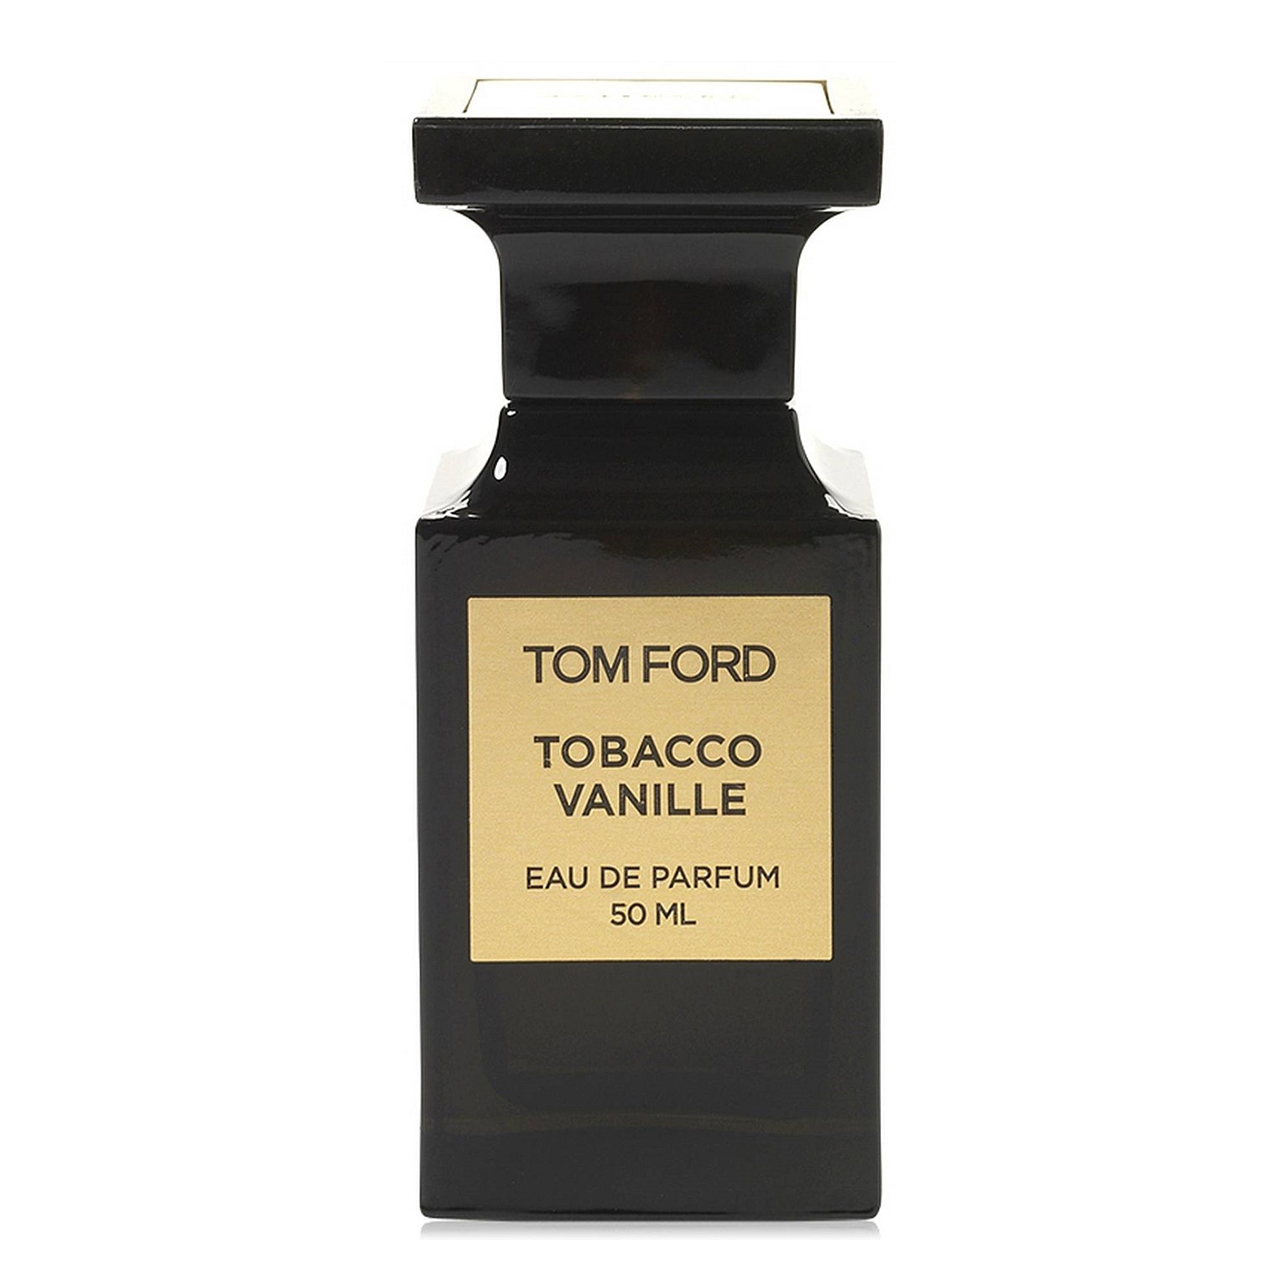 ادو پرفیوم تام فورد مدل Tobacco Vanille حجم 50 میلی لیتر